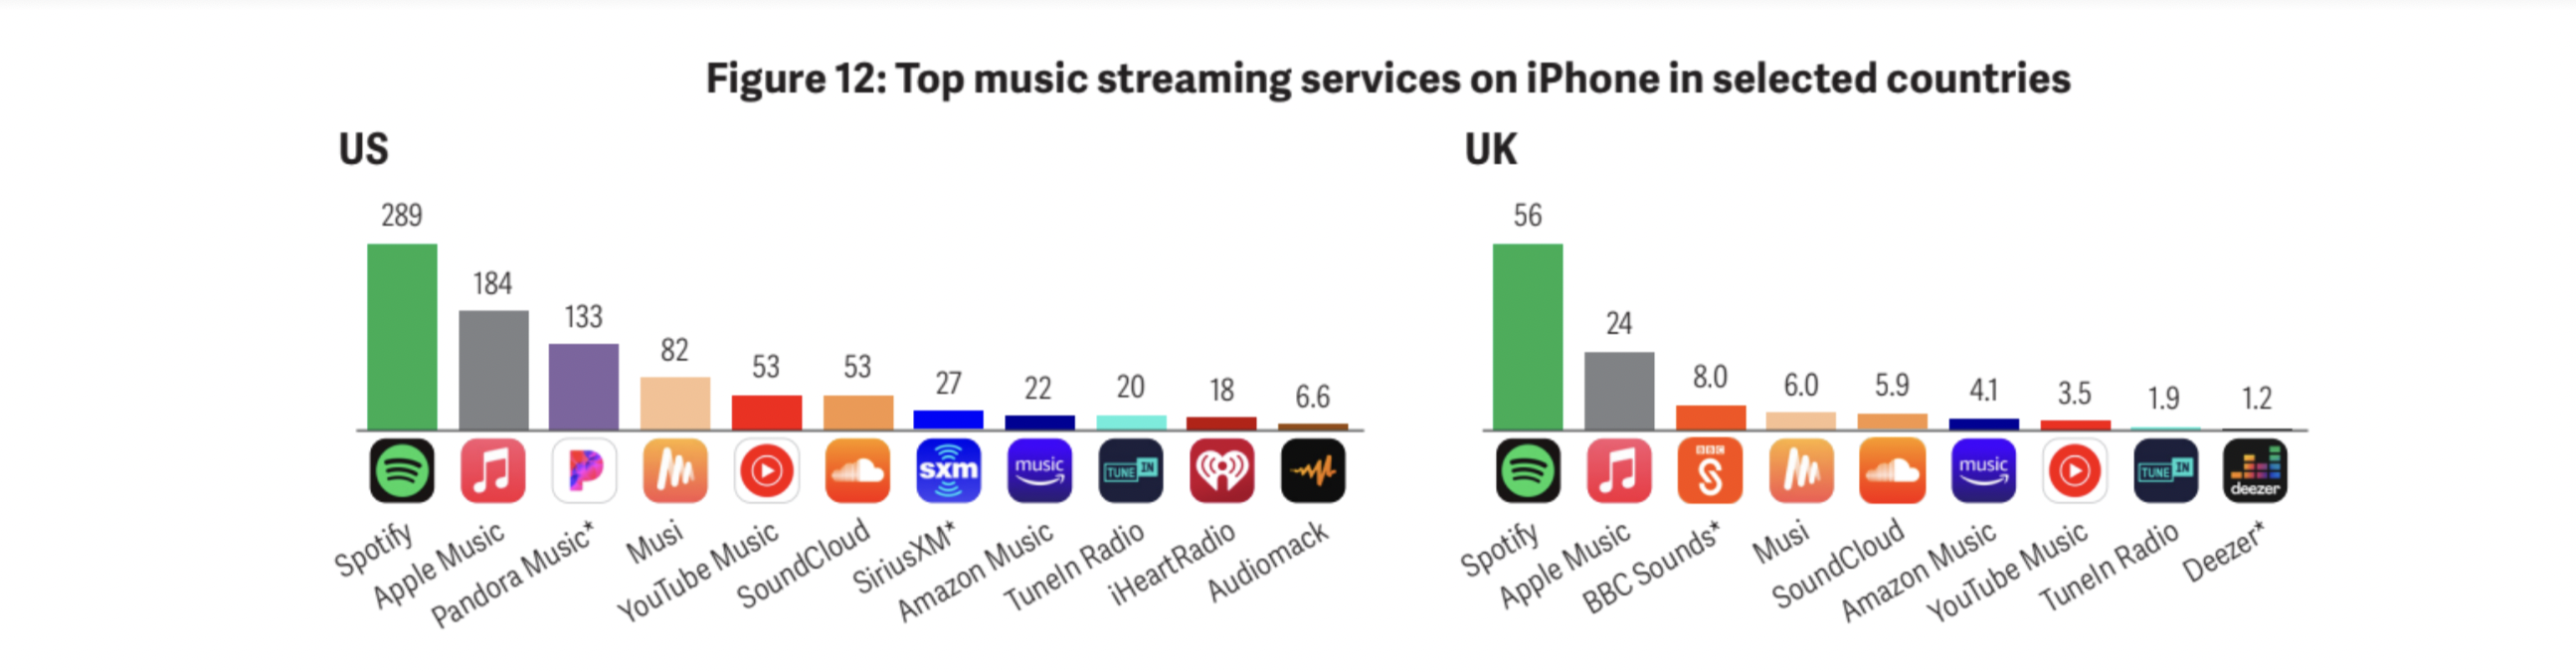 les meilleurs services de streaming musical sur iphone